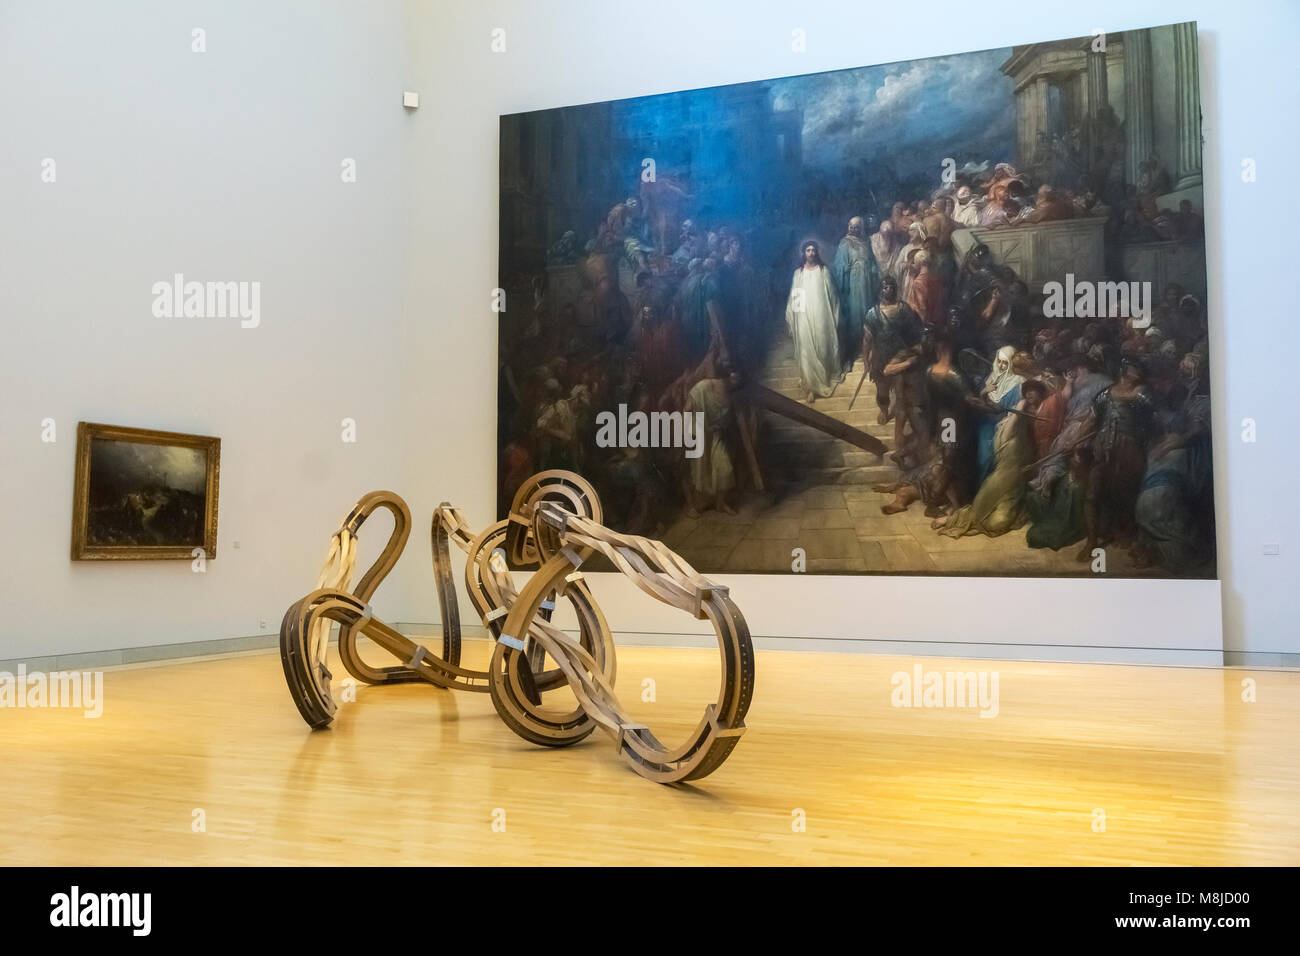 Escultura de acero y roble por Richard Deacon (2009) y la pintura Le Cristo quittant le prétoire (El Cristo saliendo del Pretorio) por Gustave Doré. Foto de stock